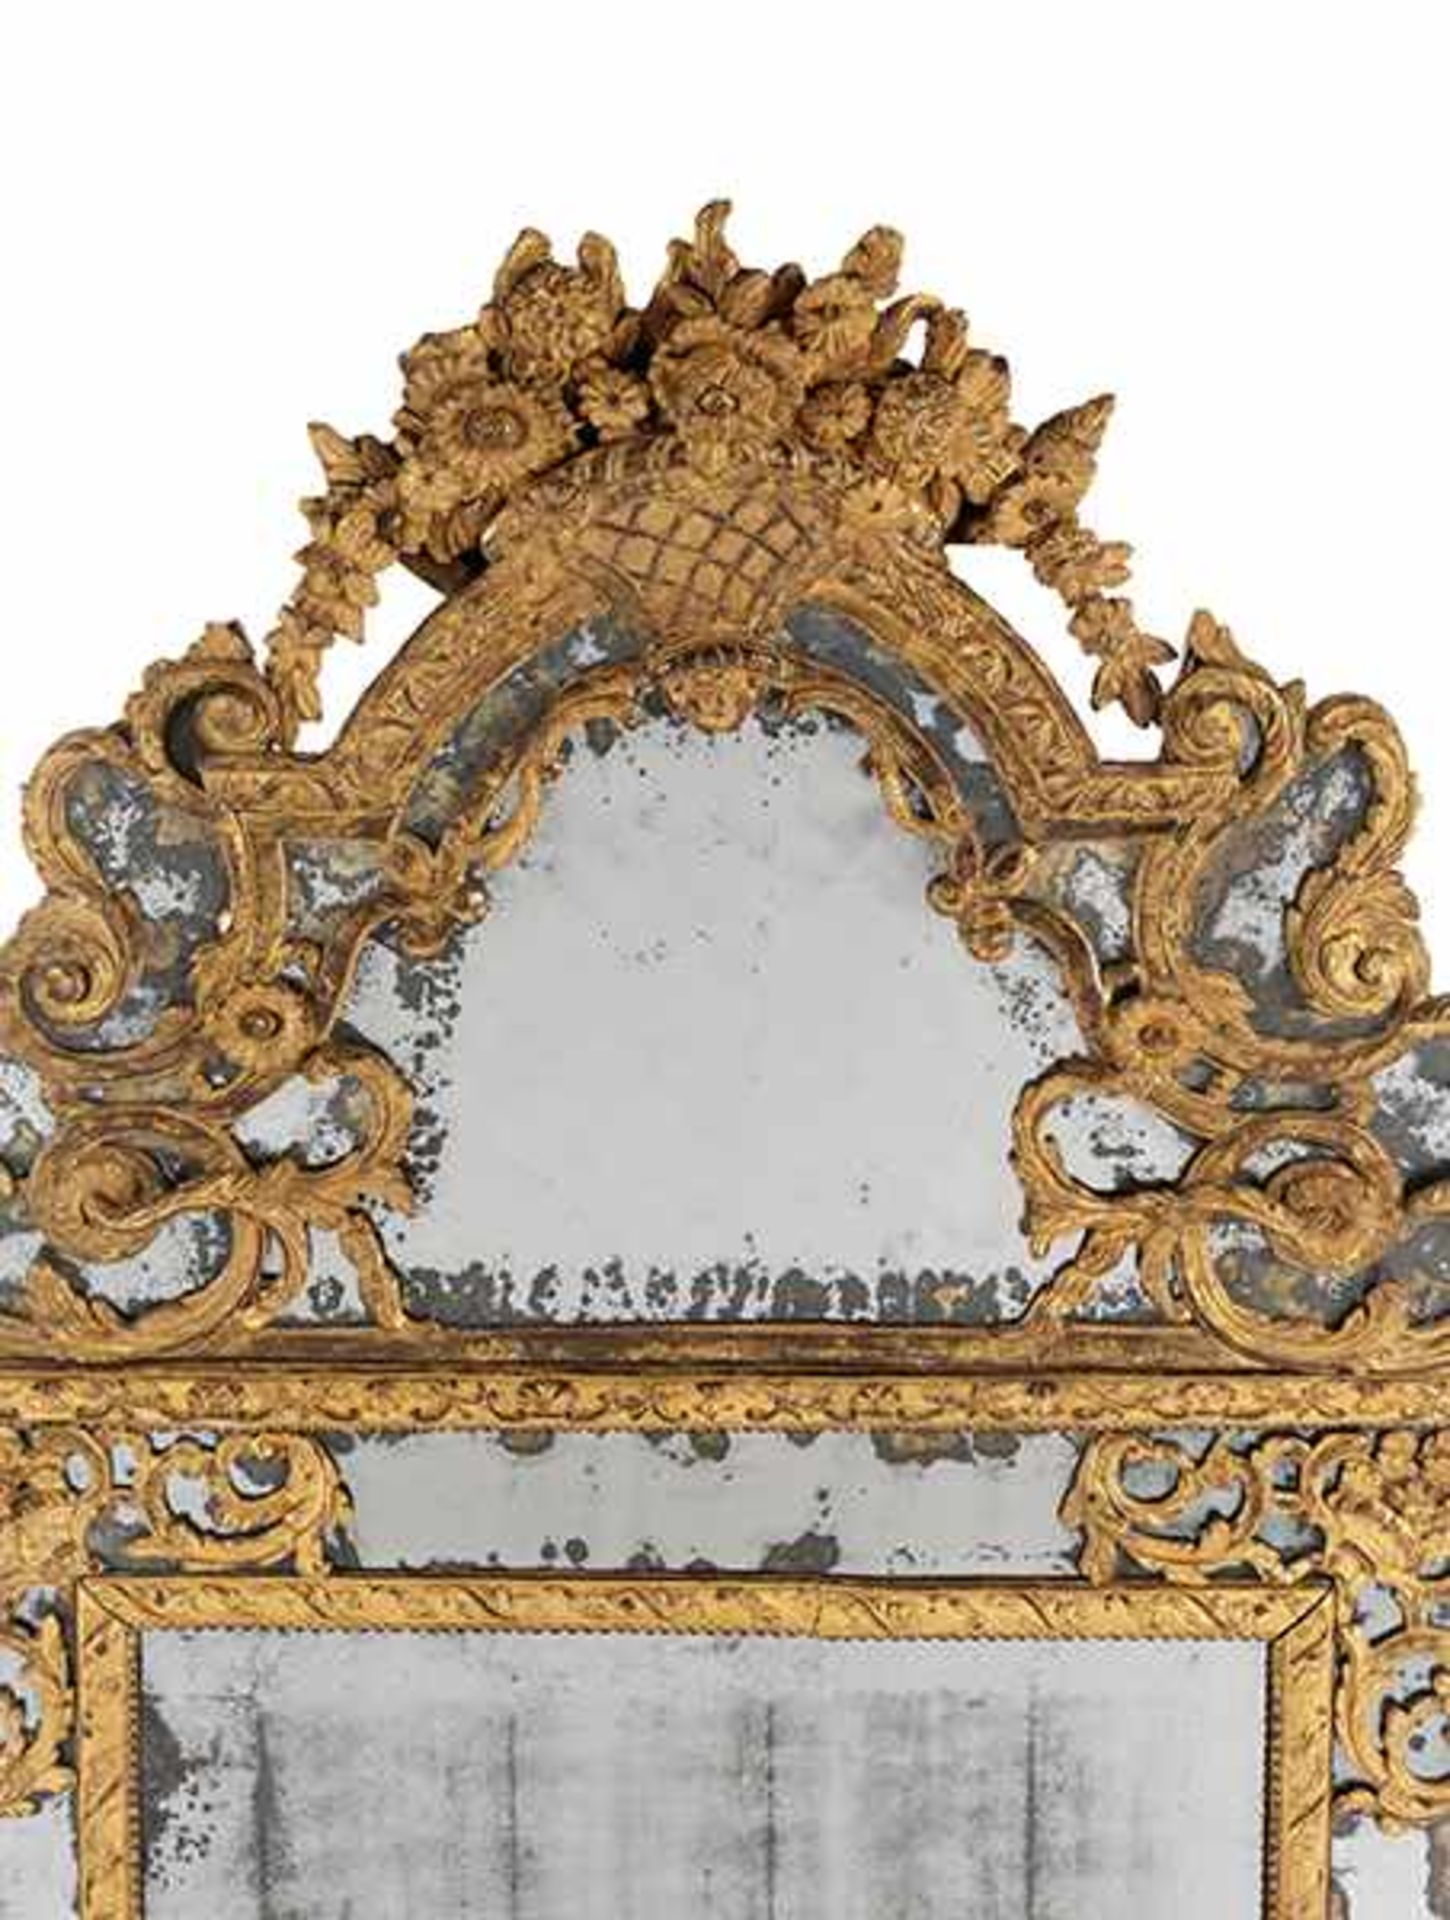 Großer Pariser Salonspiegel Höhe: 150 cm. Breite: 78 cm. Paris, frühes 18. Jahrhundert. Holz, - Bild 2 aus 5